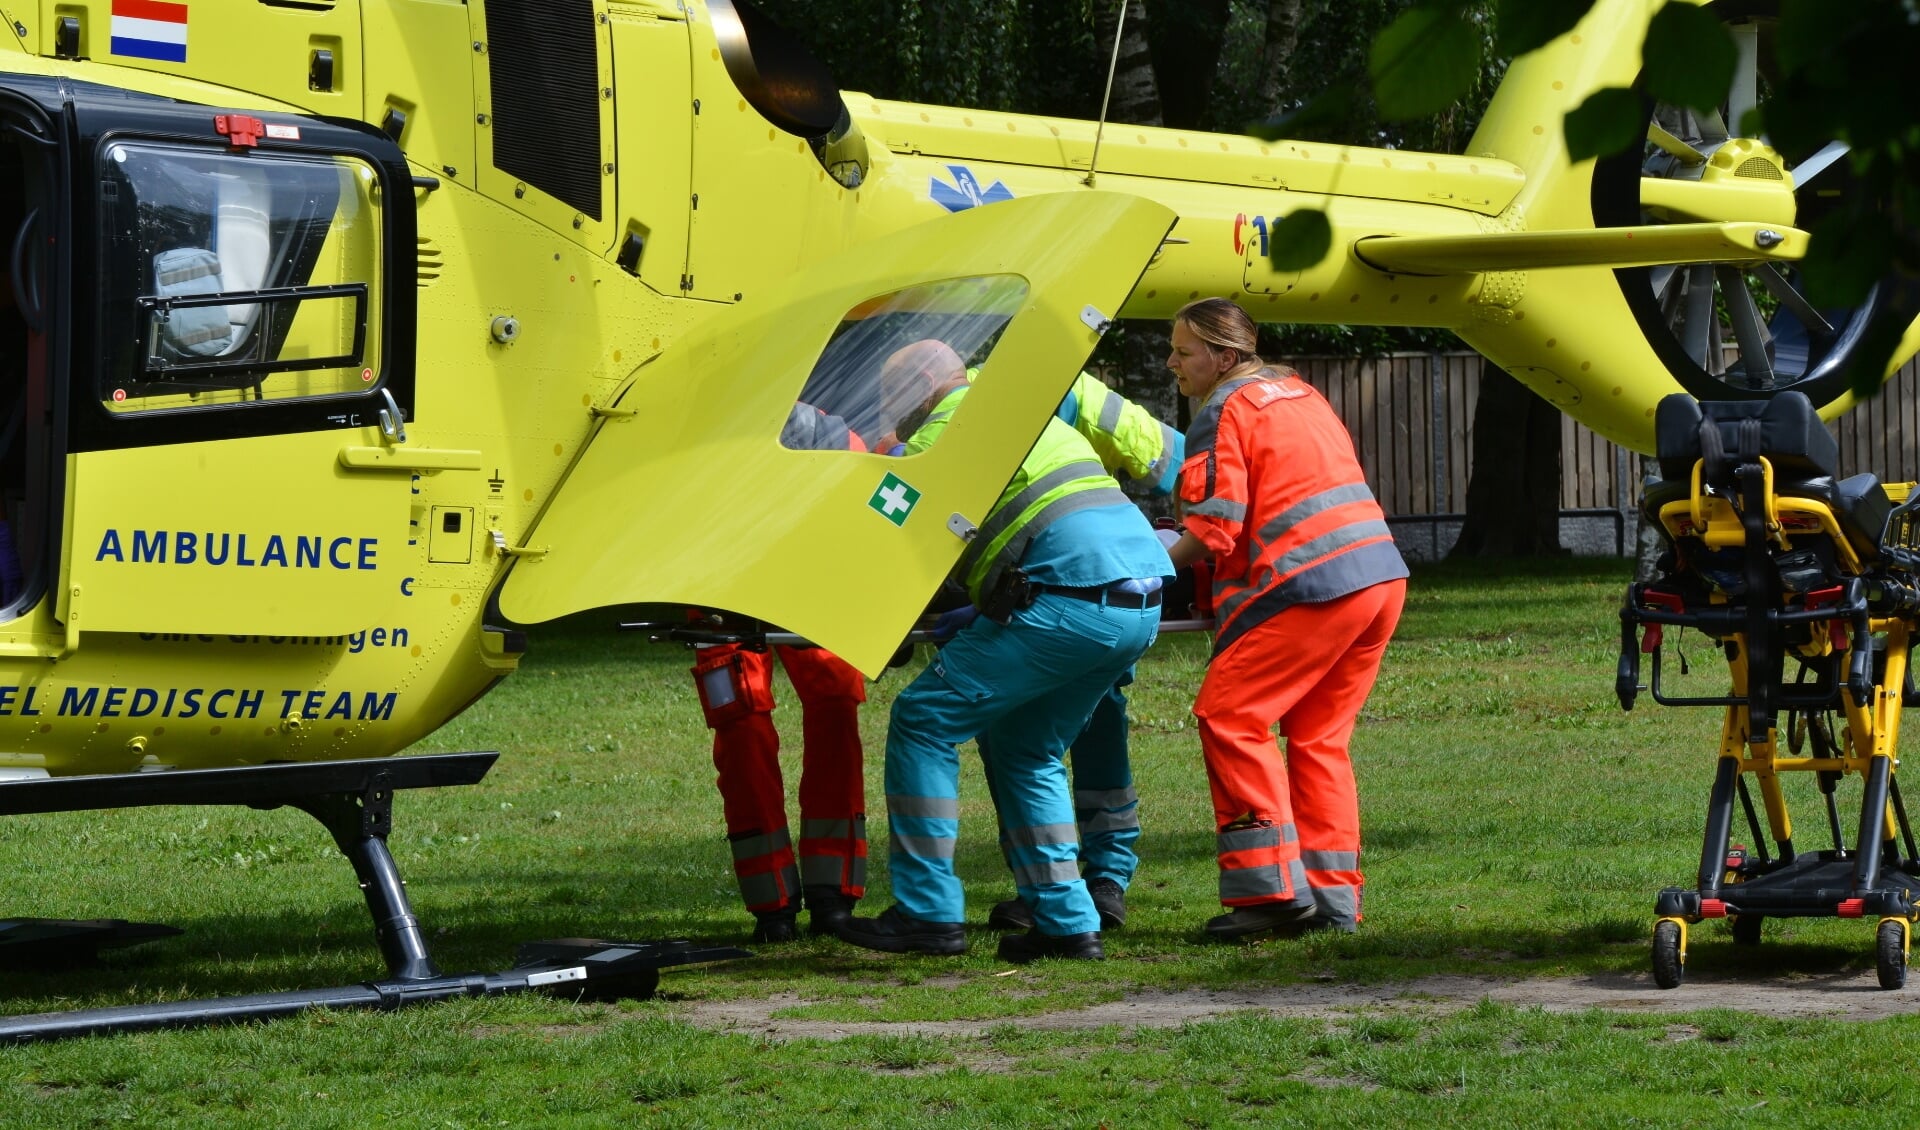 Het kind is met een traumahelikopter overgebracht naar het ziekenhuis.